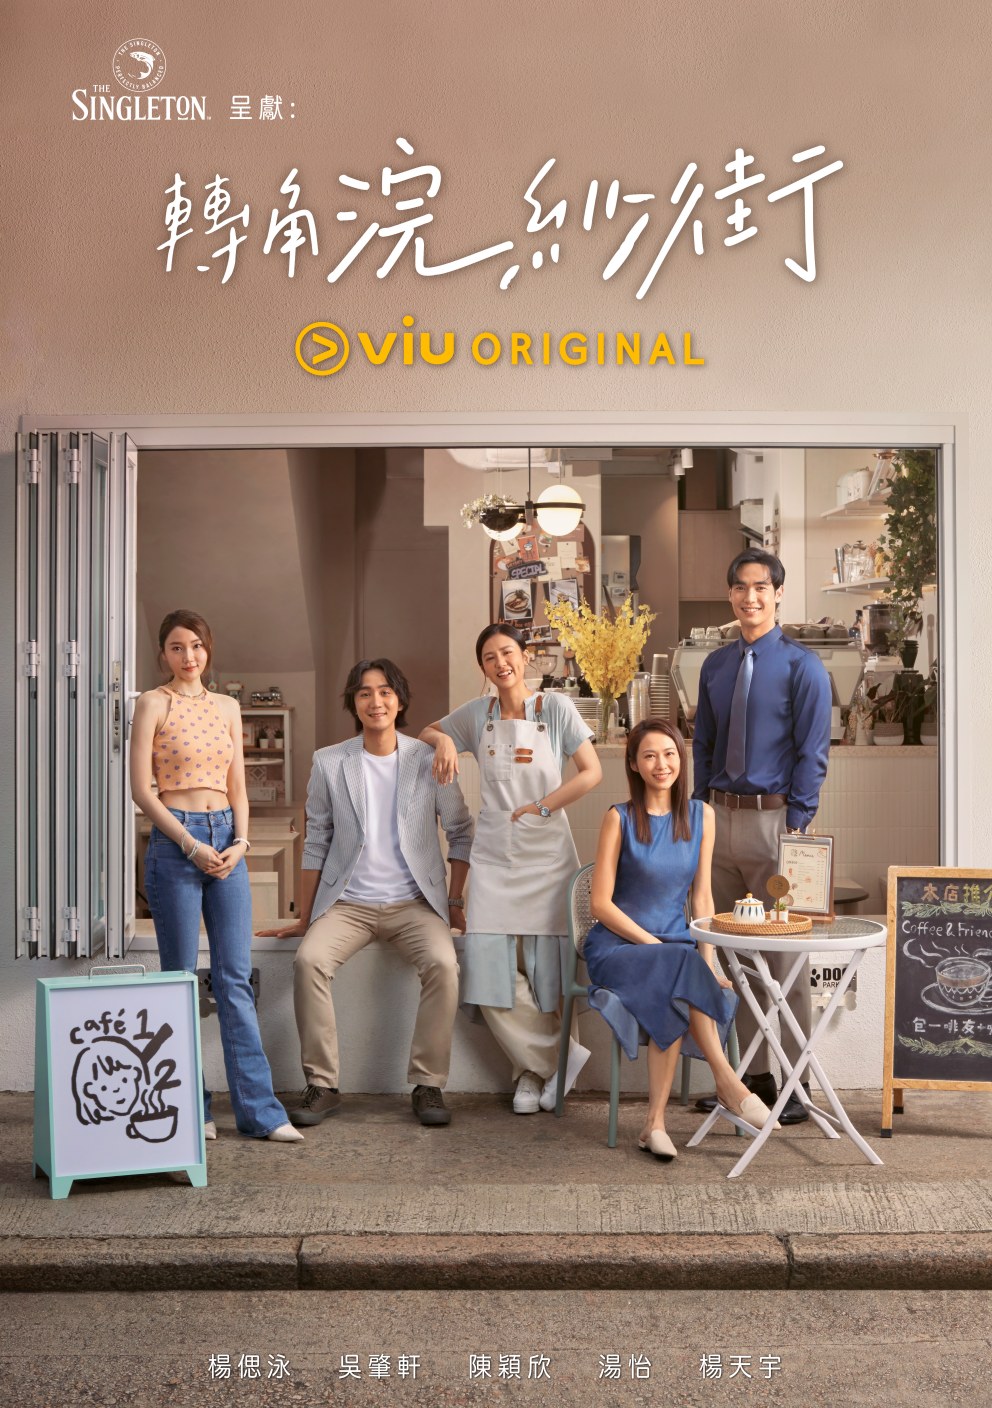 一连10集的Viu Original原创剧《转角浣纱街》逢星期五、六中午12时在「黄Viu煲剧平台」独家上架。